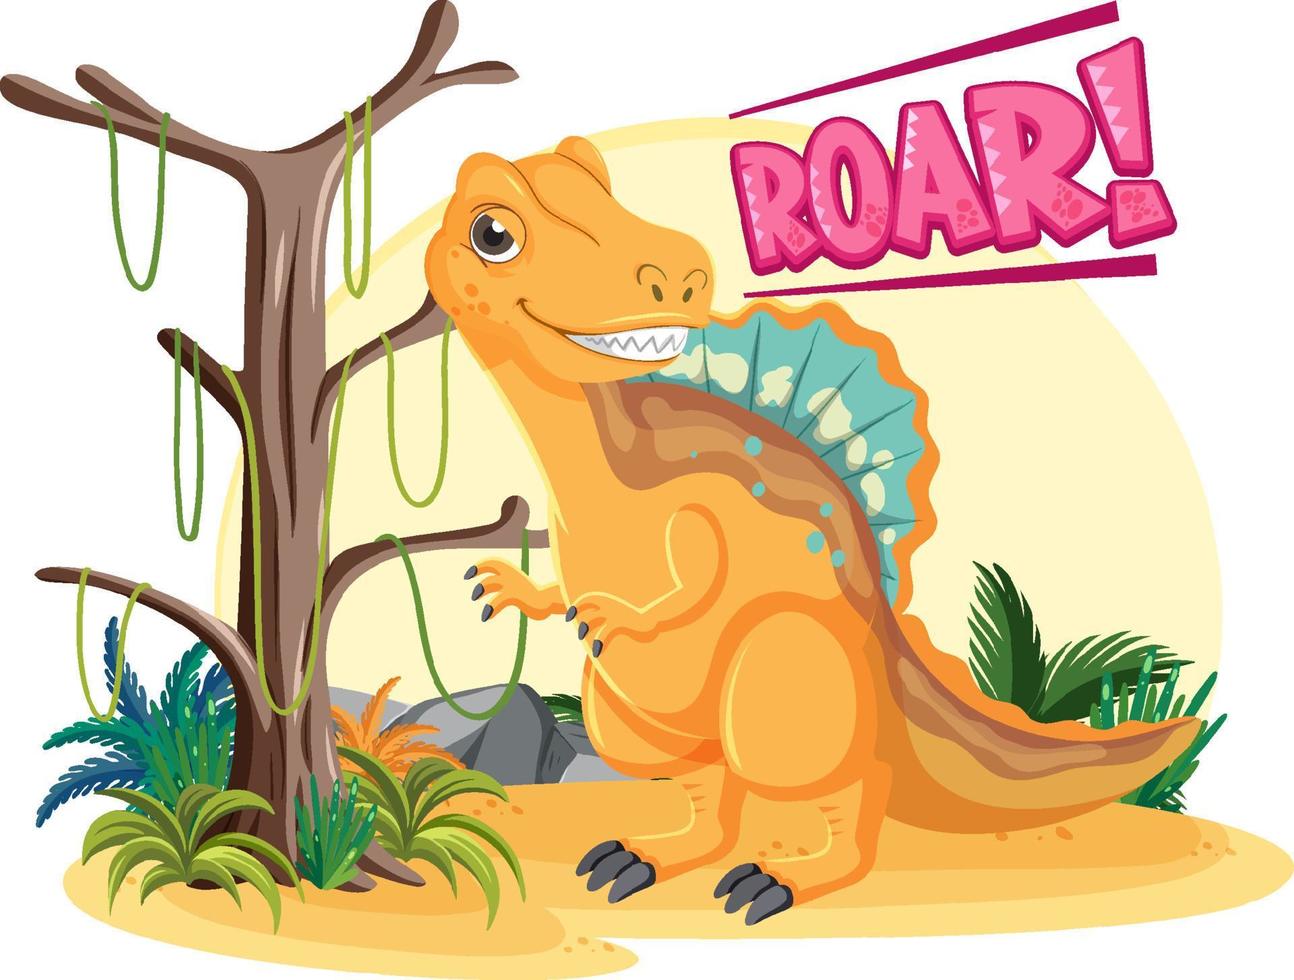 kleine niedliche Spinosaurus-Dinosaurier-Zeichentrickfigur vektor